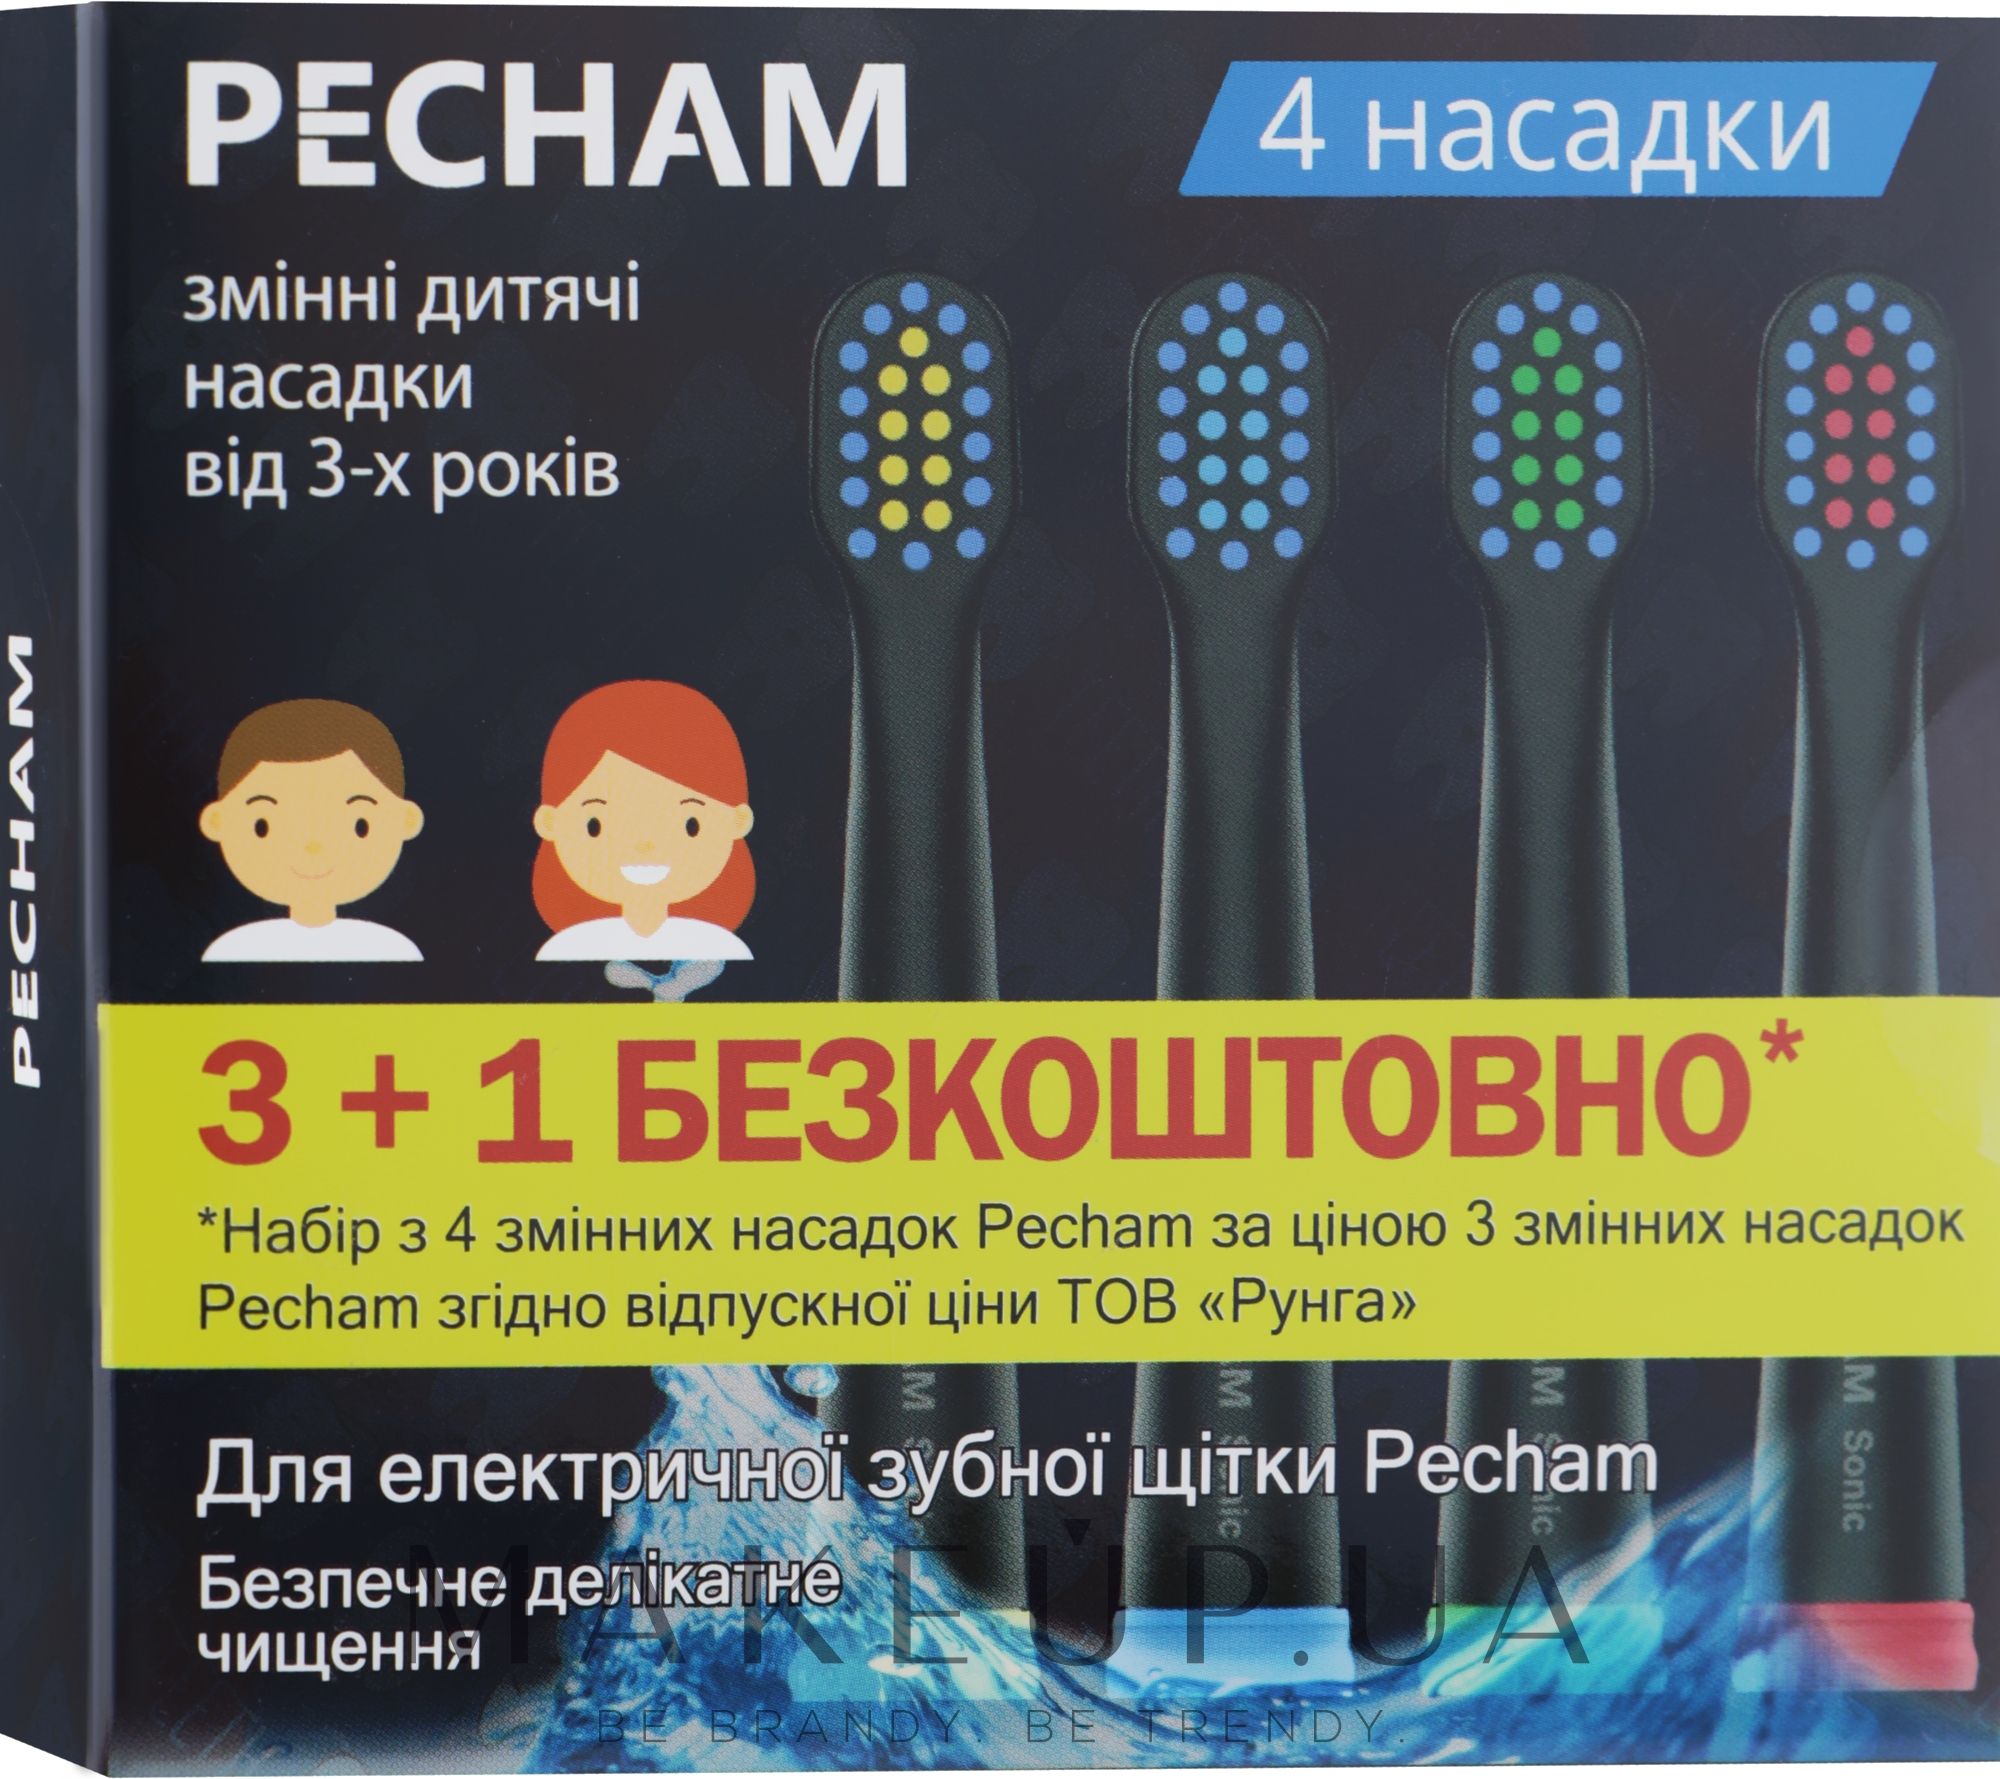 Дитячі насадки до електричної зубної щітки, чорні - Pecham — фото 4шт